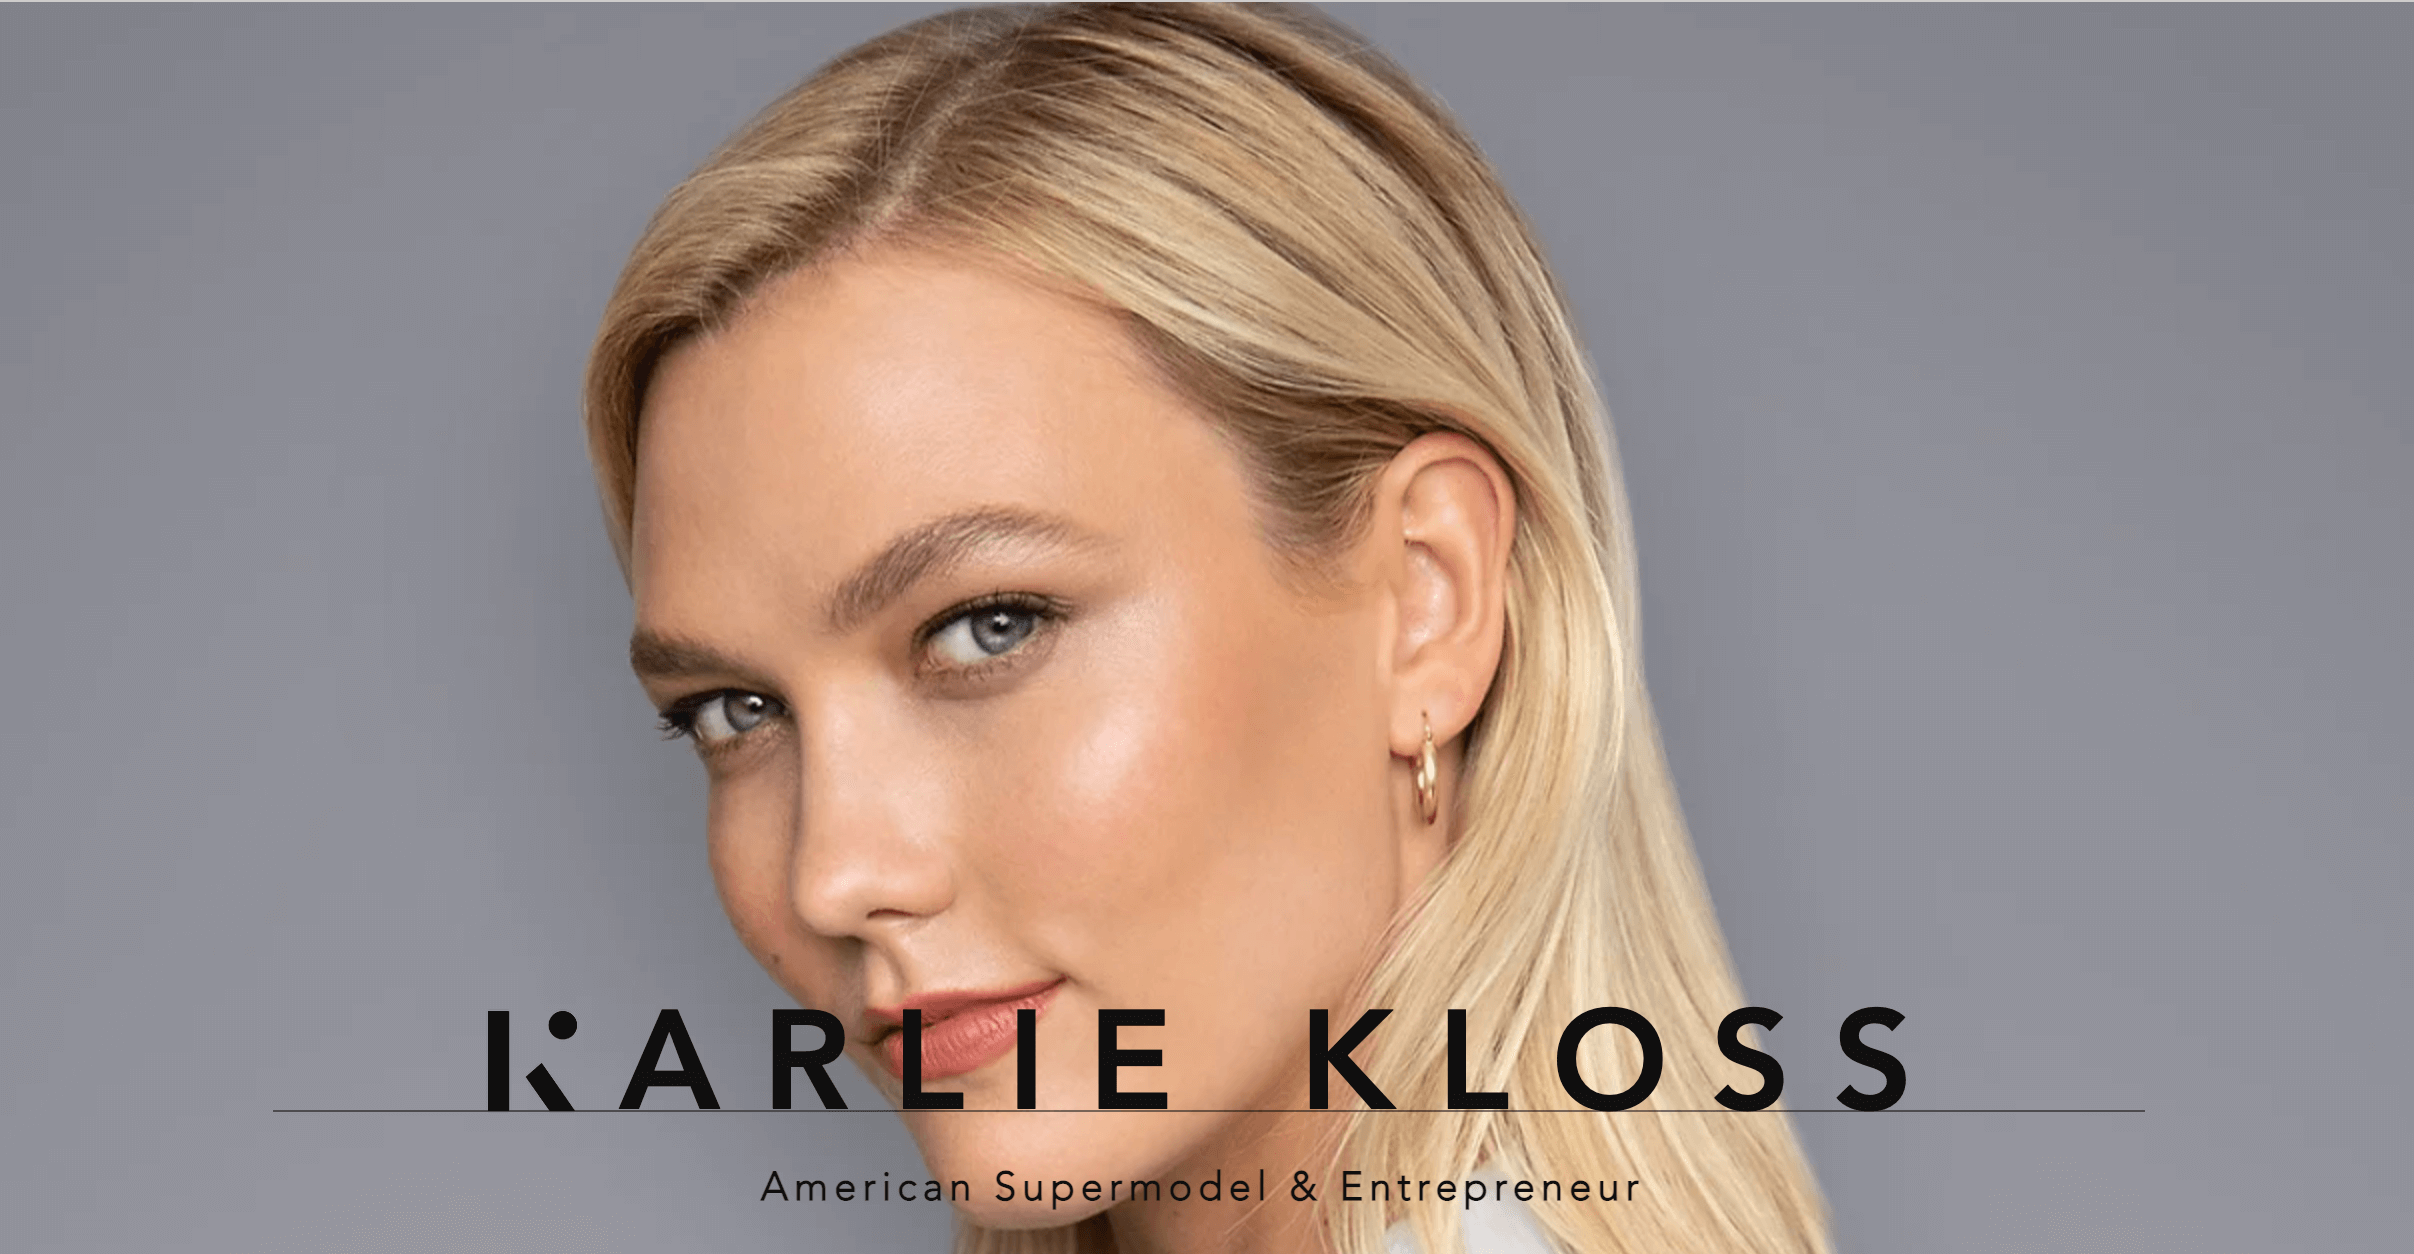 Karlie Kloss' homepage